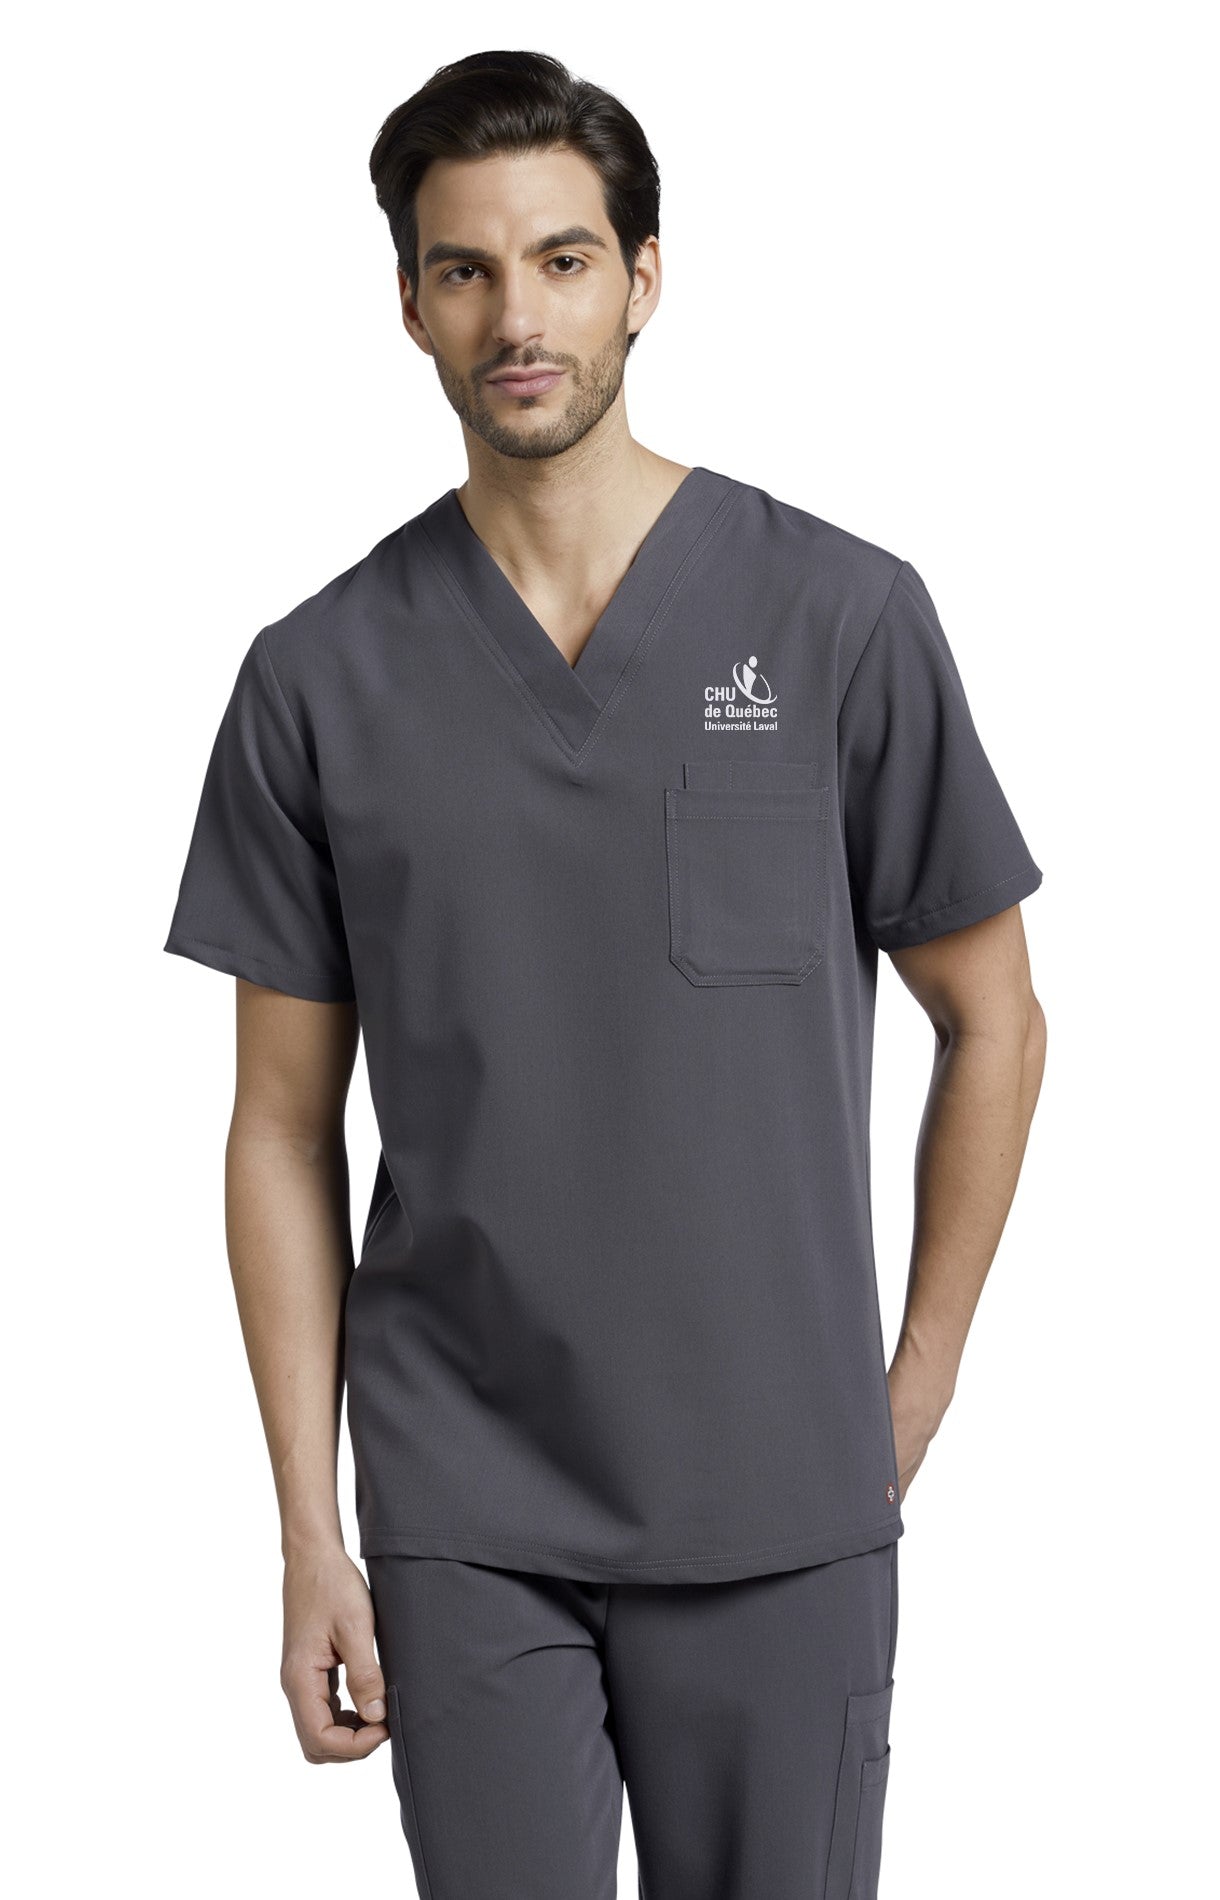 Haut d'uniforme pour infirmiers Uniformes Sélect #2206CHU gris